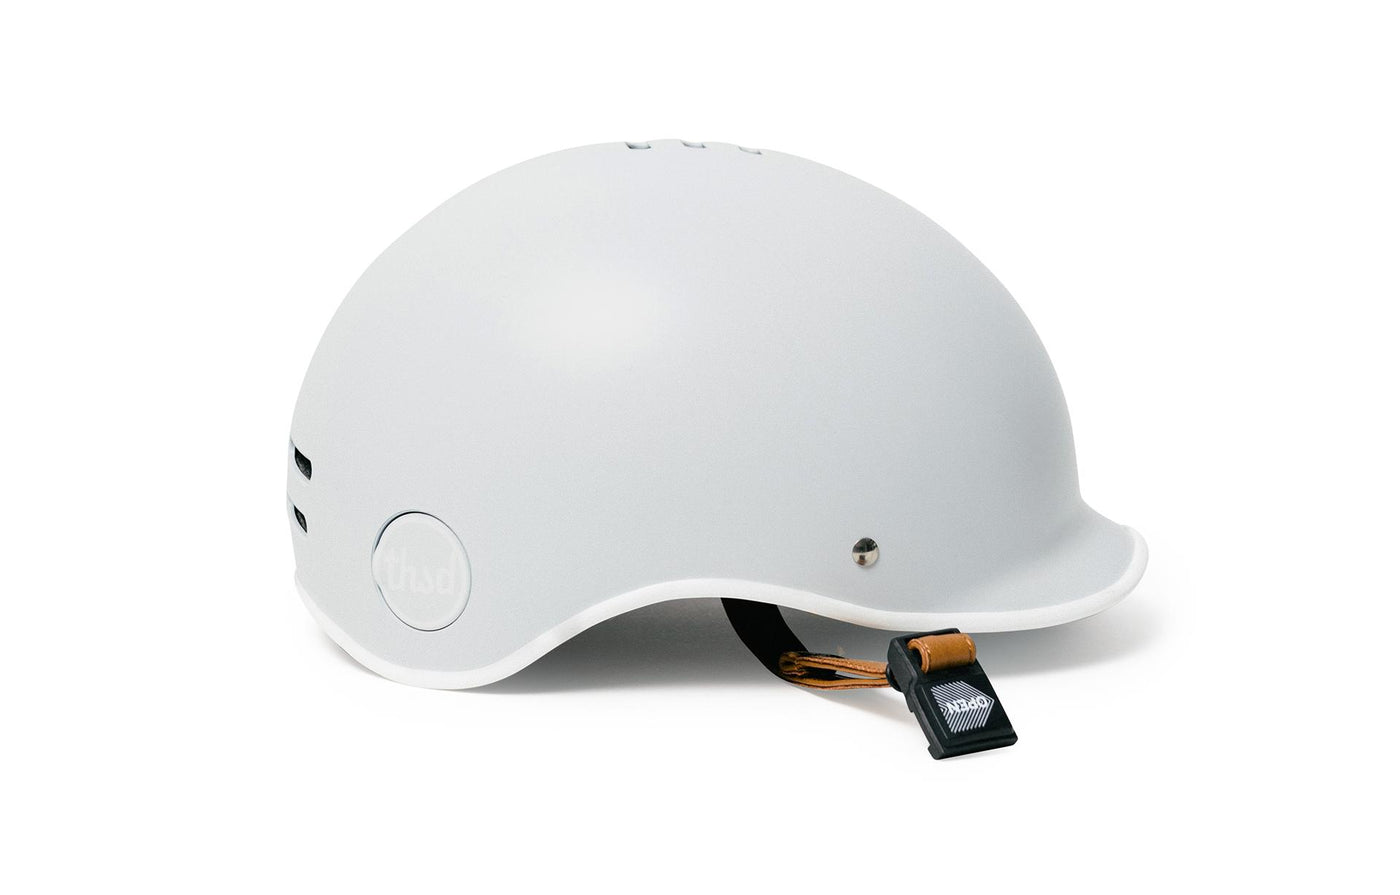 Thousand Helmets Arctic grey Stylish helmet